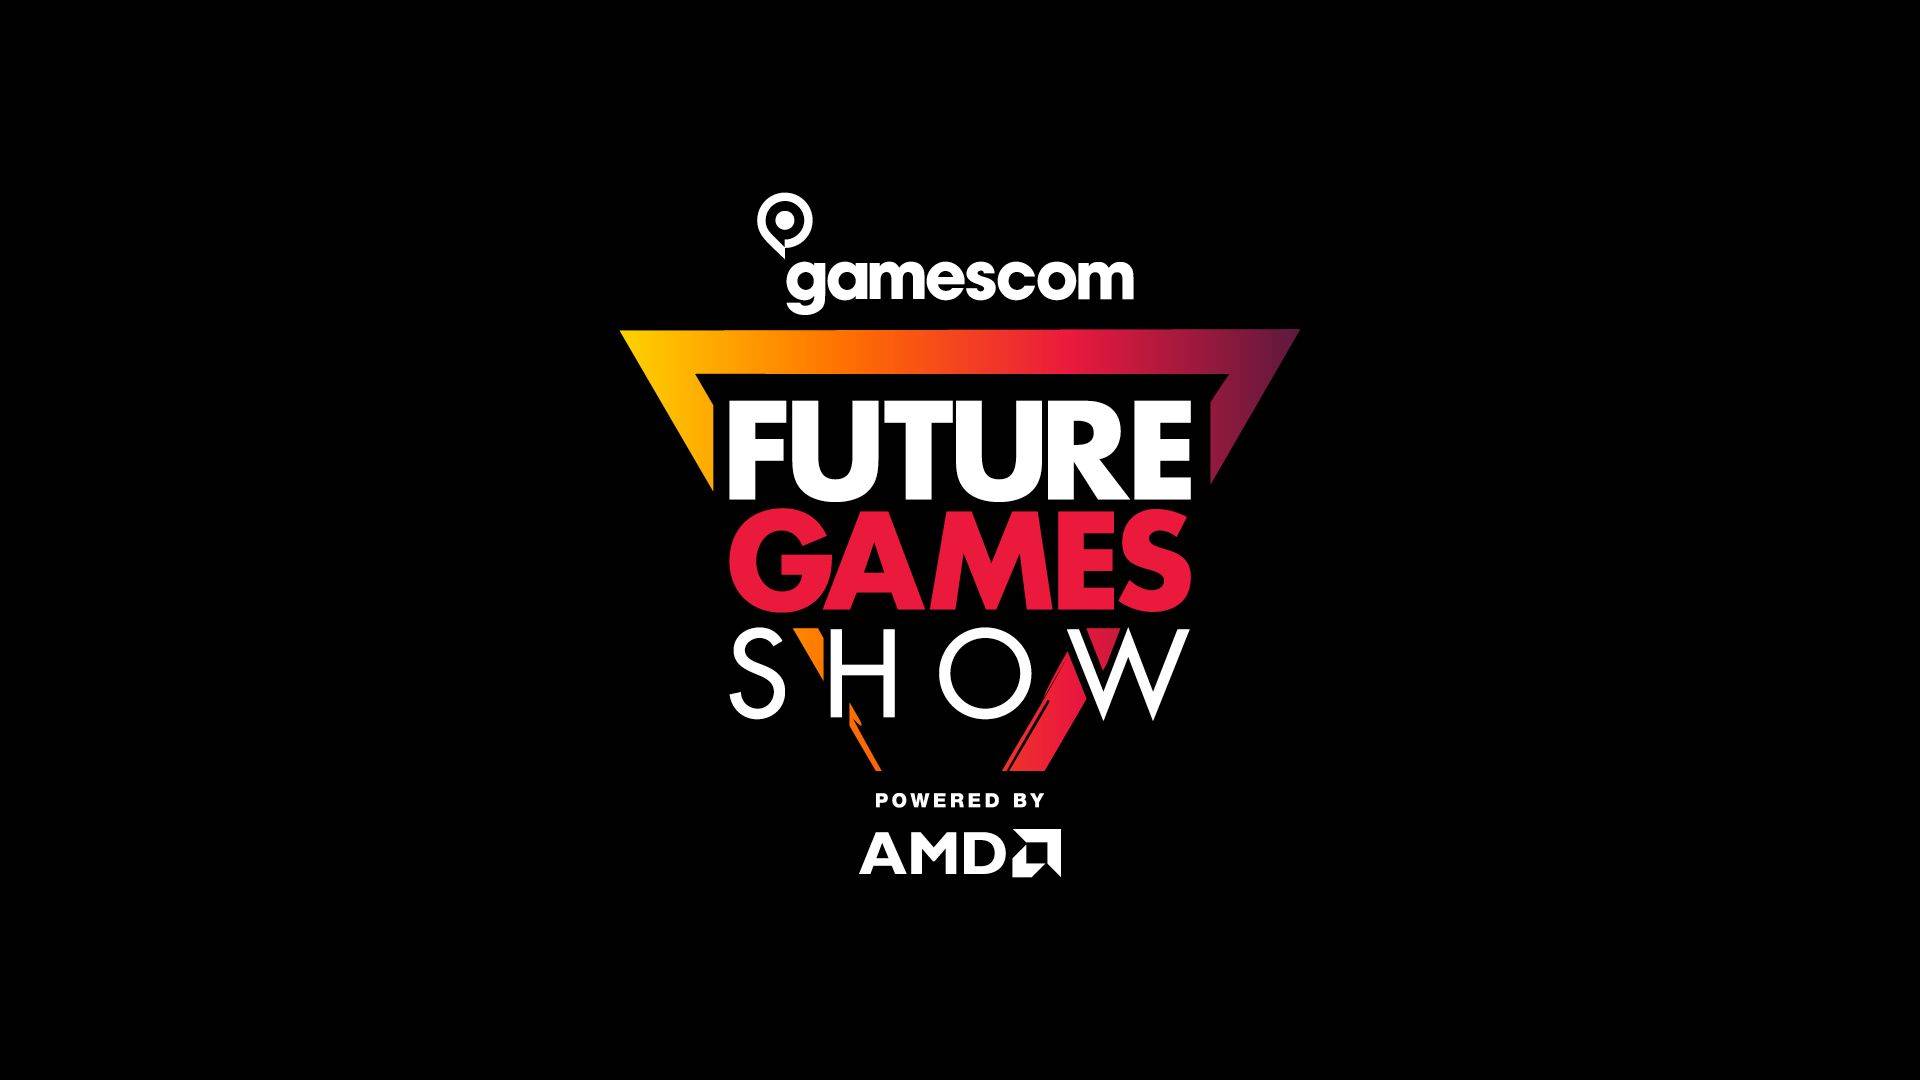 Future Games Show at Gamescom